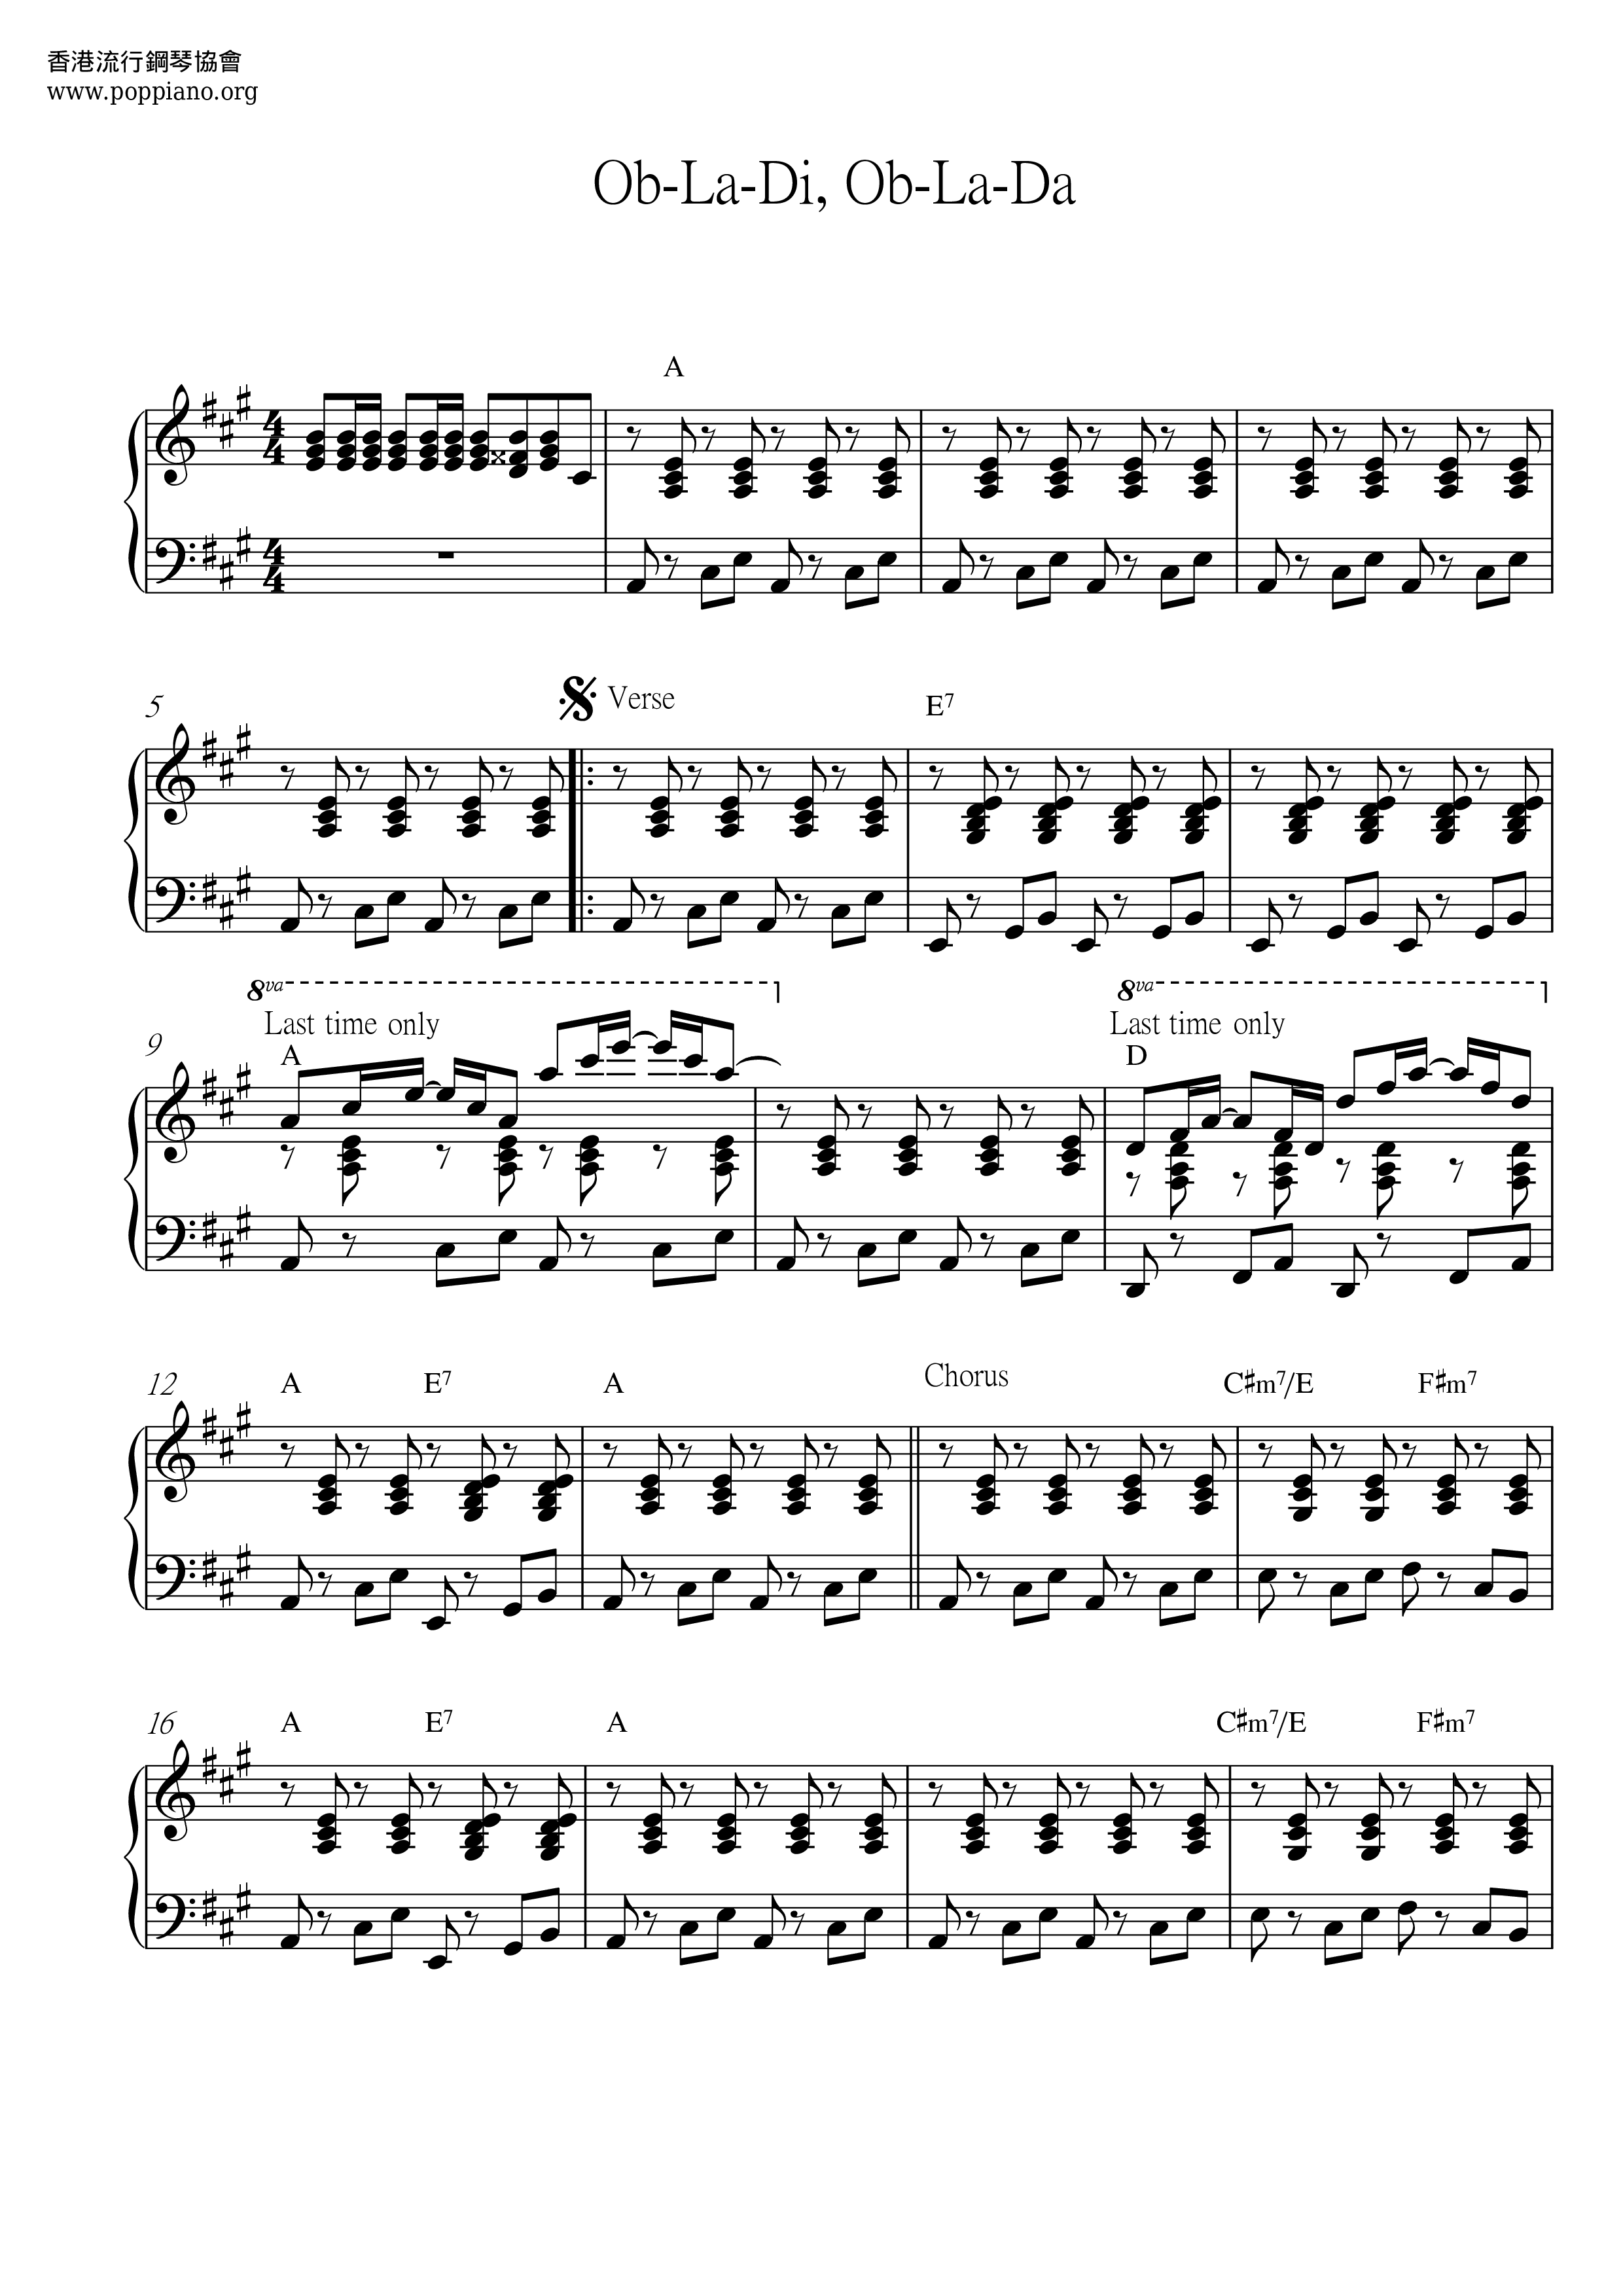 Ob-La-Di Ob-La-Daピアノ譜